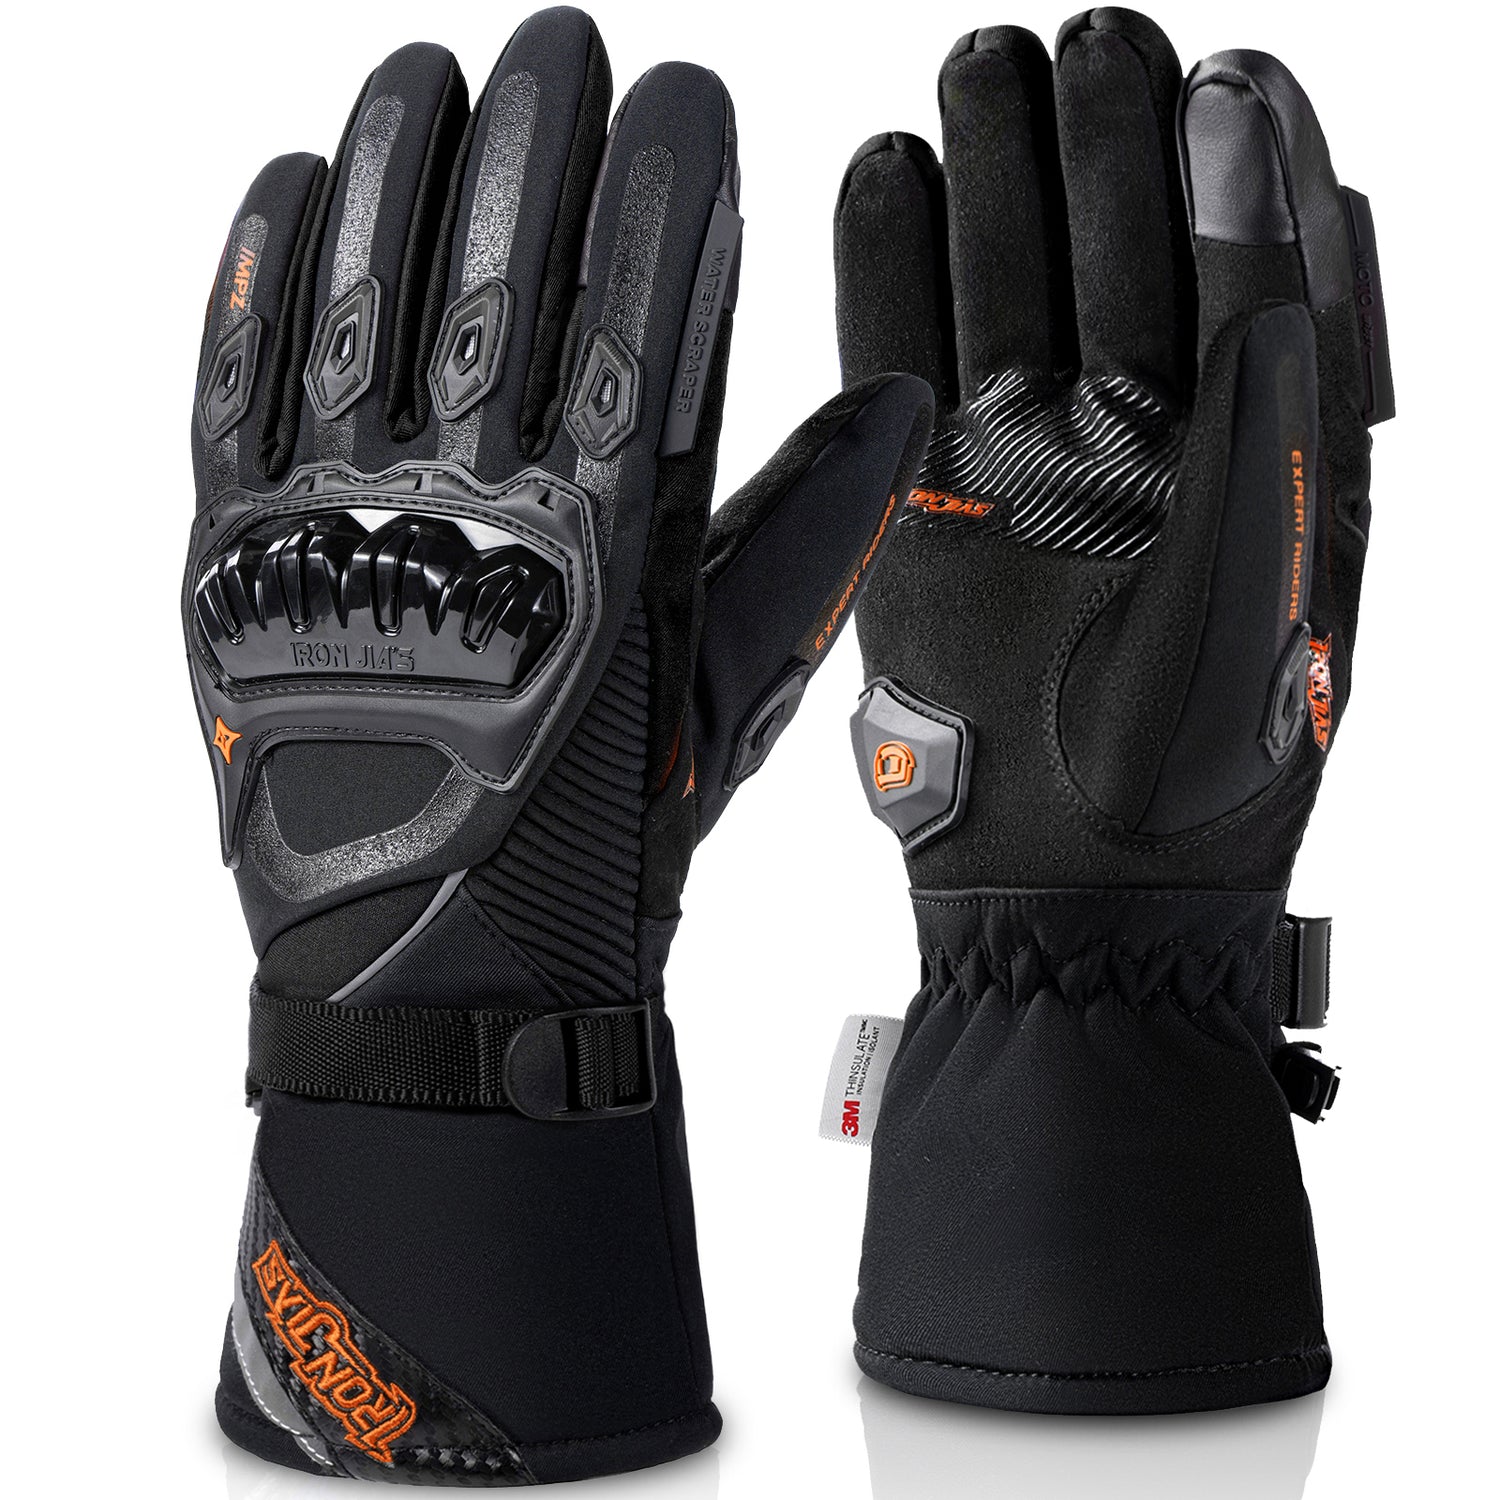 Black Waterproof Winter Motorcycle Gloves